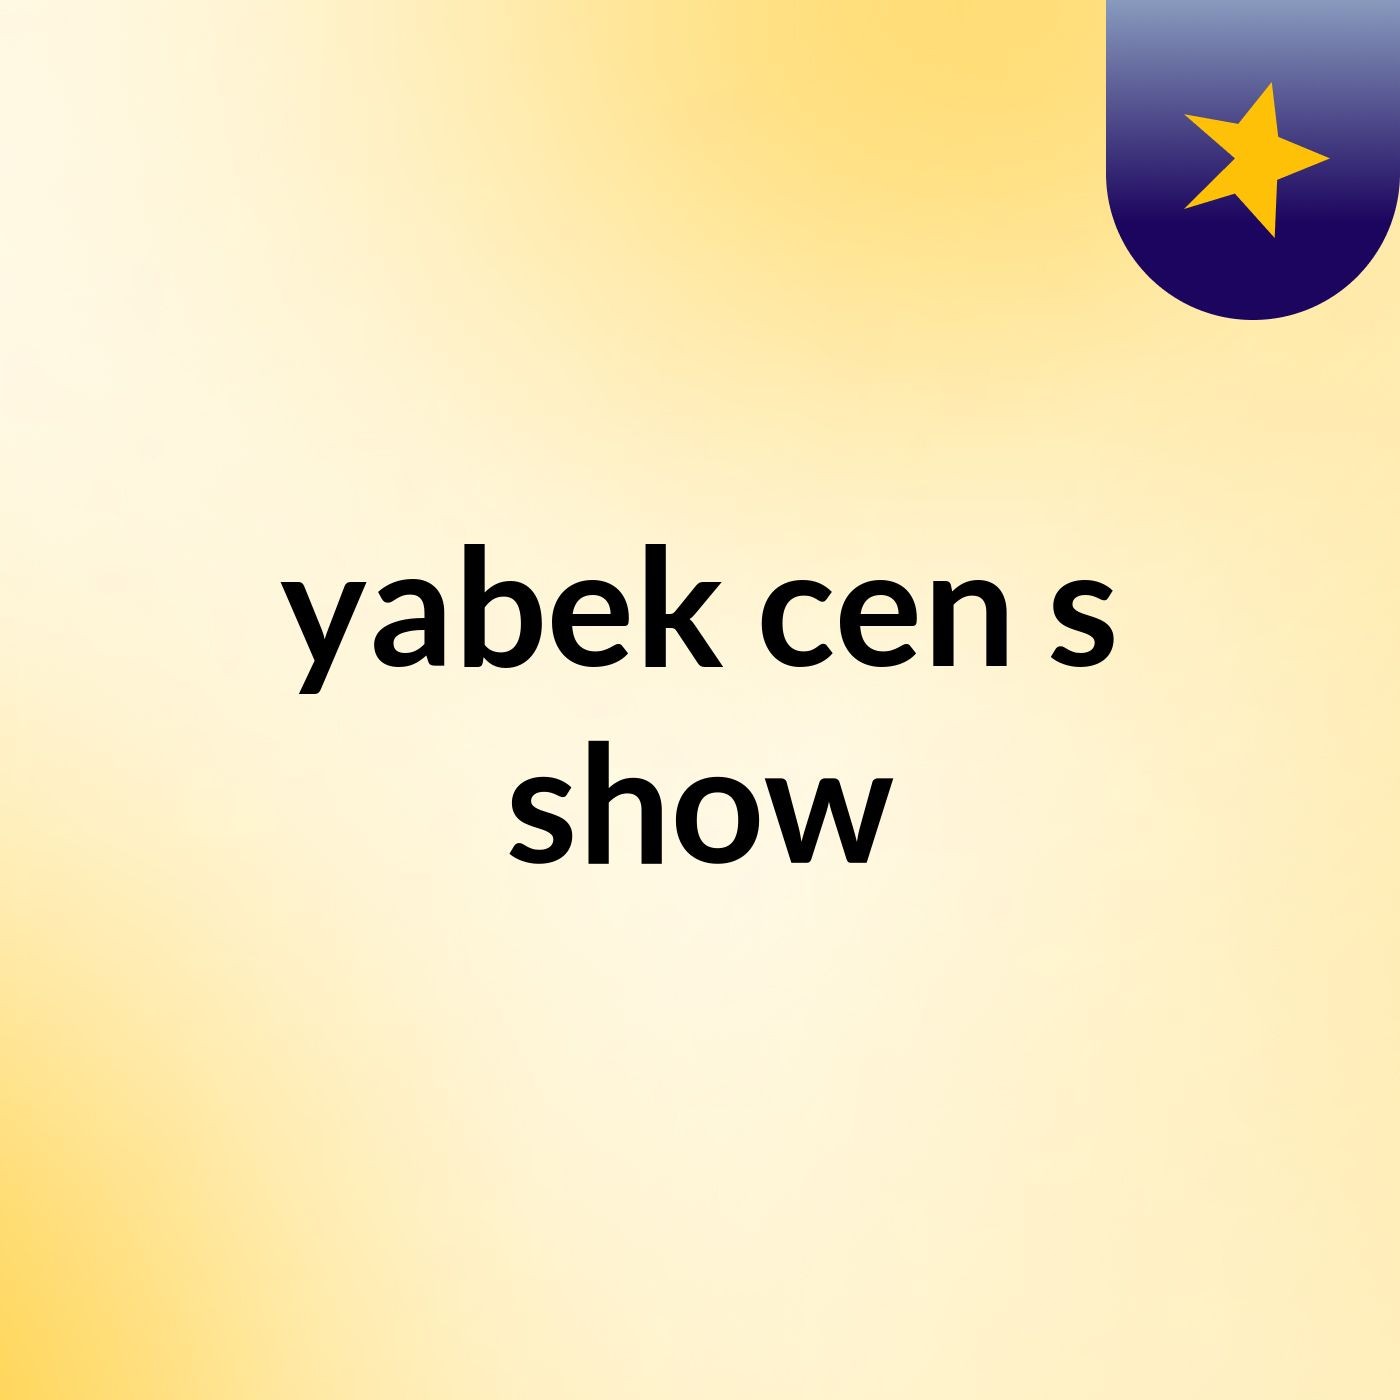 yabek cen's show